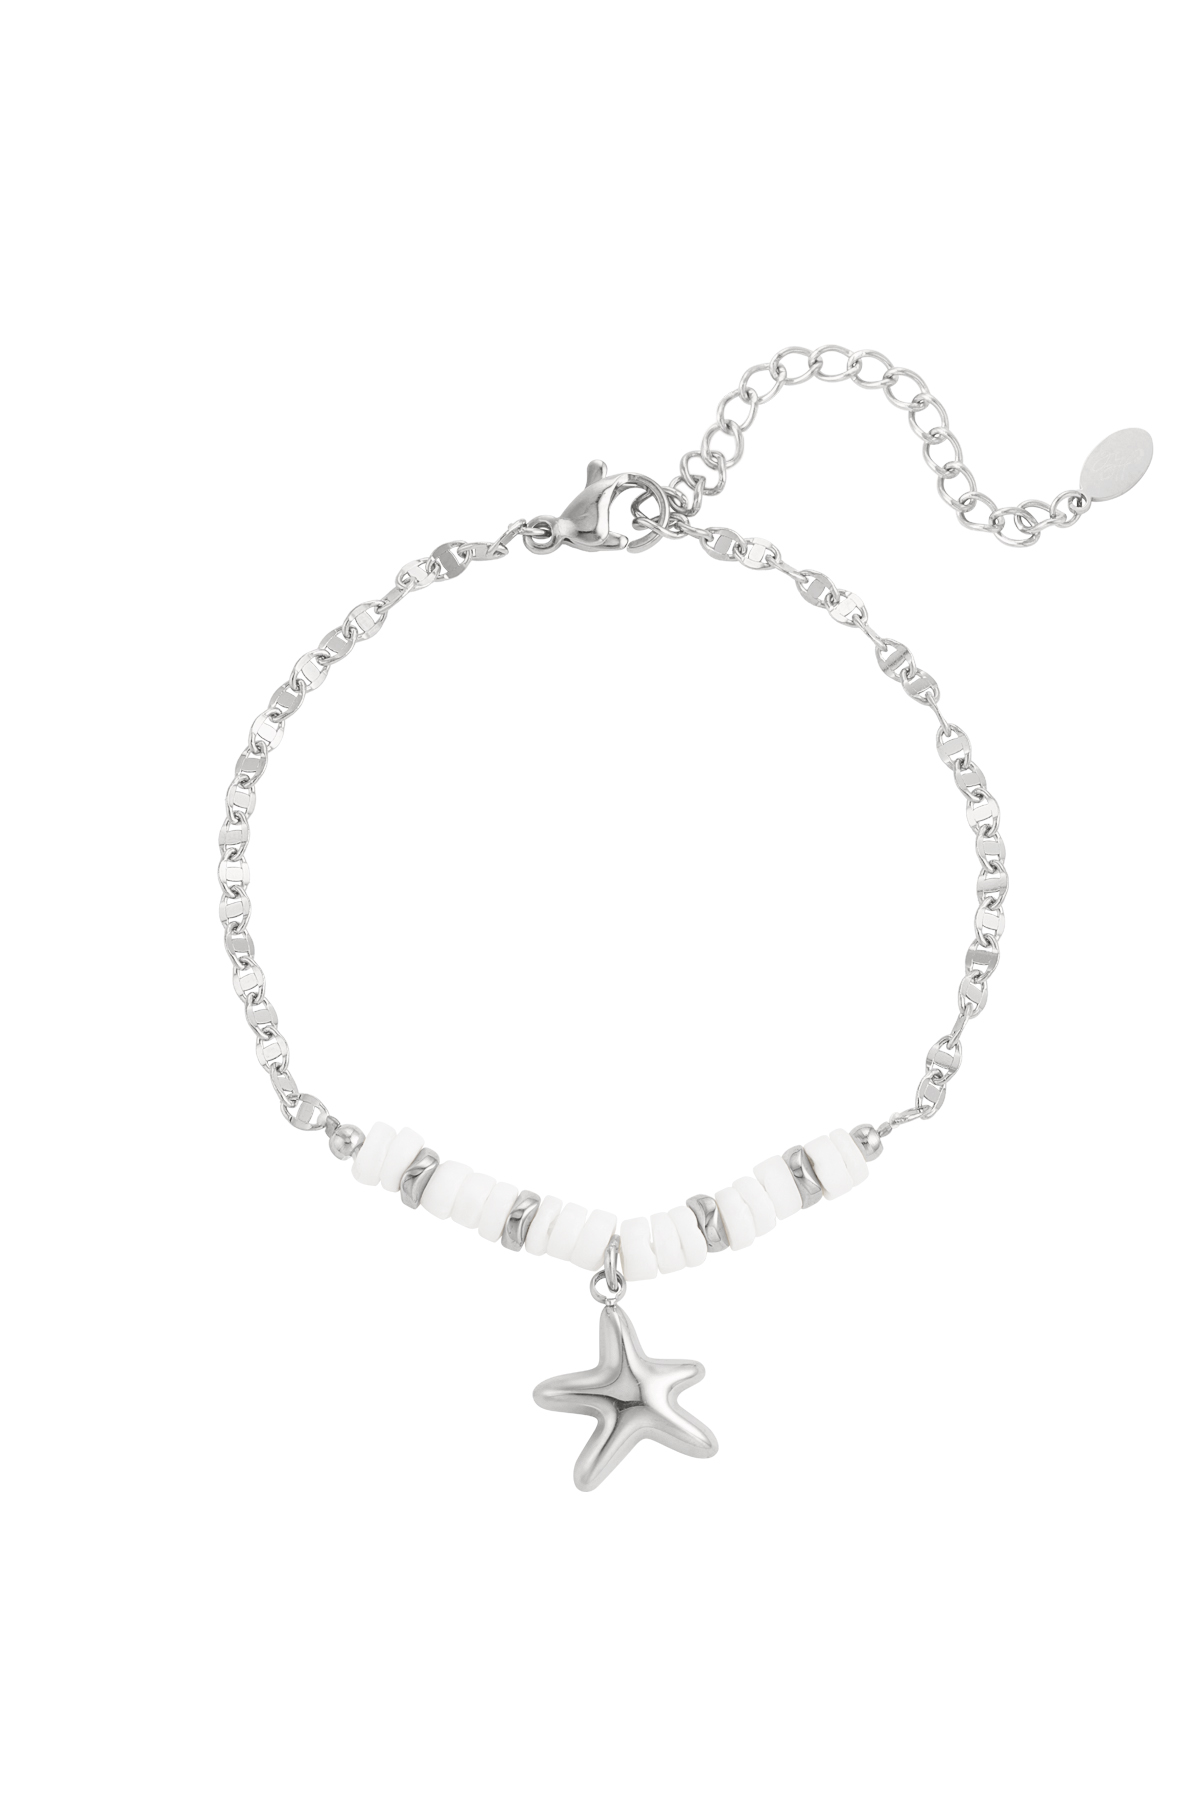 Bracciale perline e stella marina - argento 